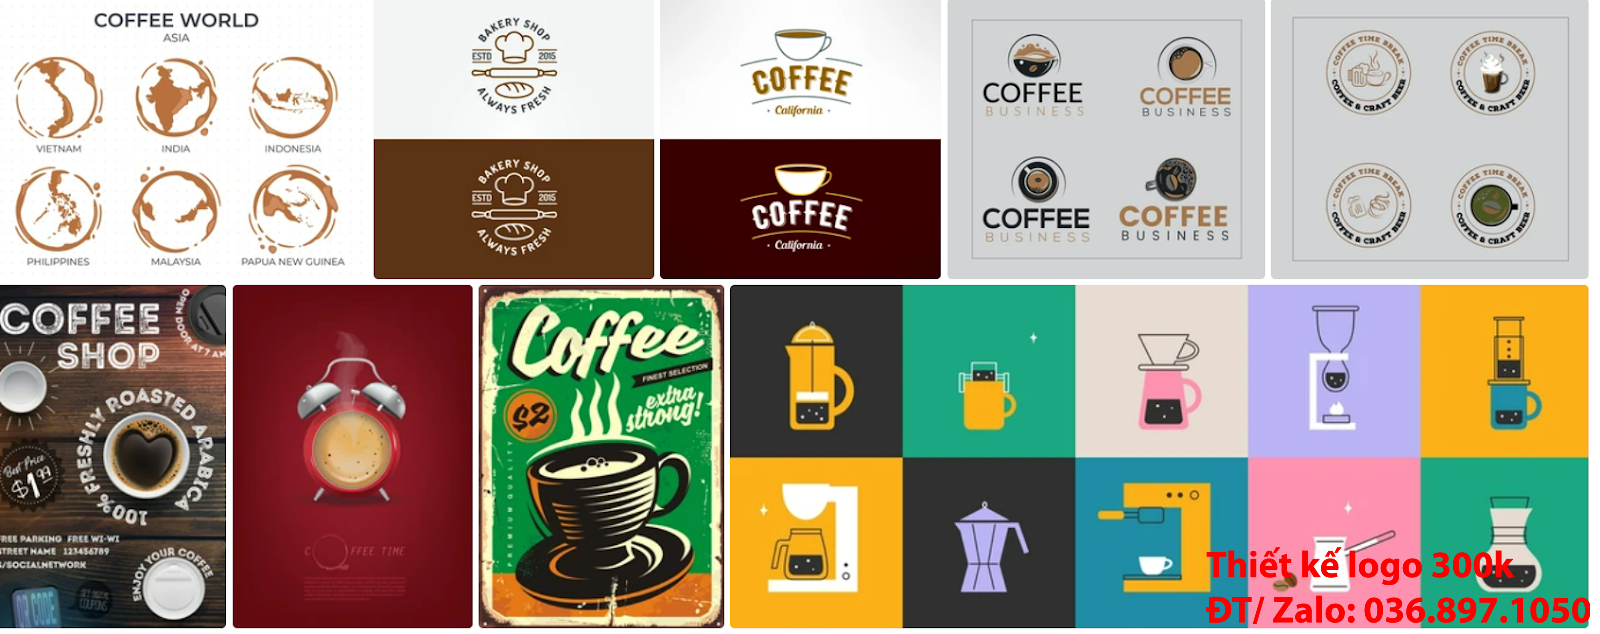 Đơn vị cung cấp mẫu thiết kế logo cà phê cafe coffee đẹp nhất hiện nay đơn giản tại Hà Nội